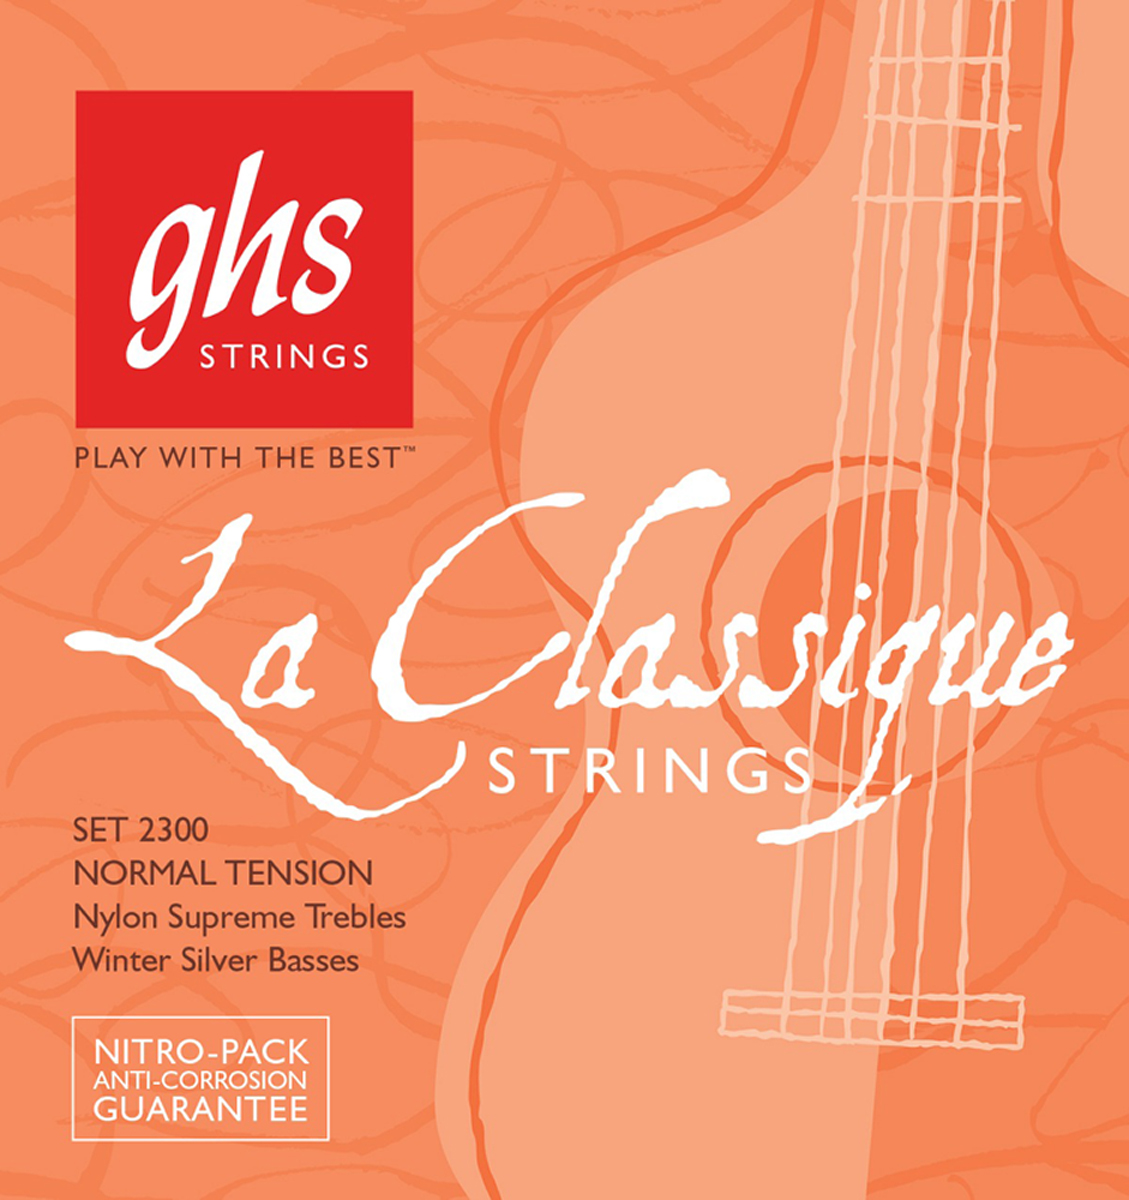 Струны для классической гитары GHS 2300 La Classique Strings Normal Tension